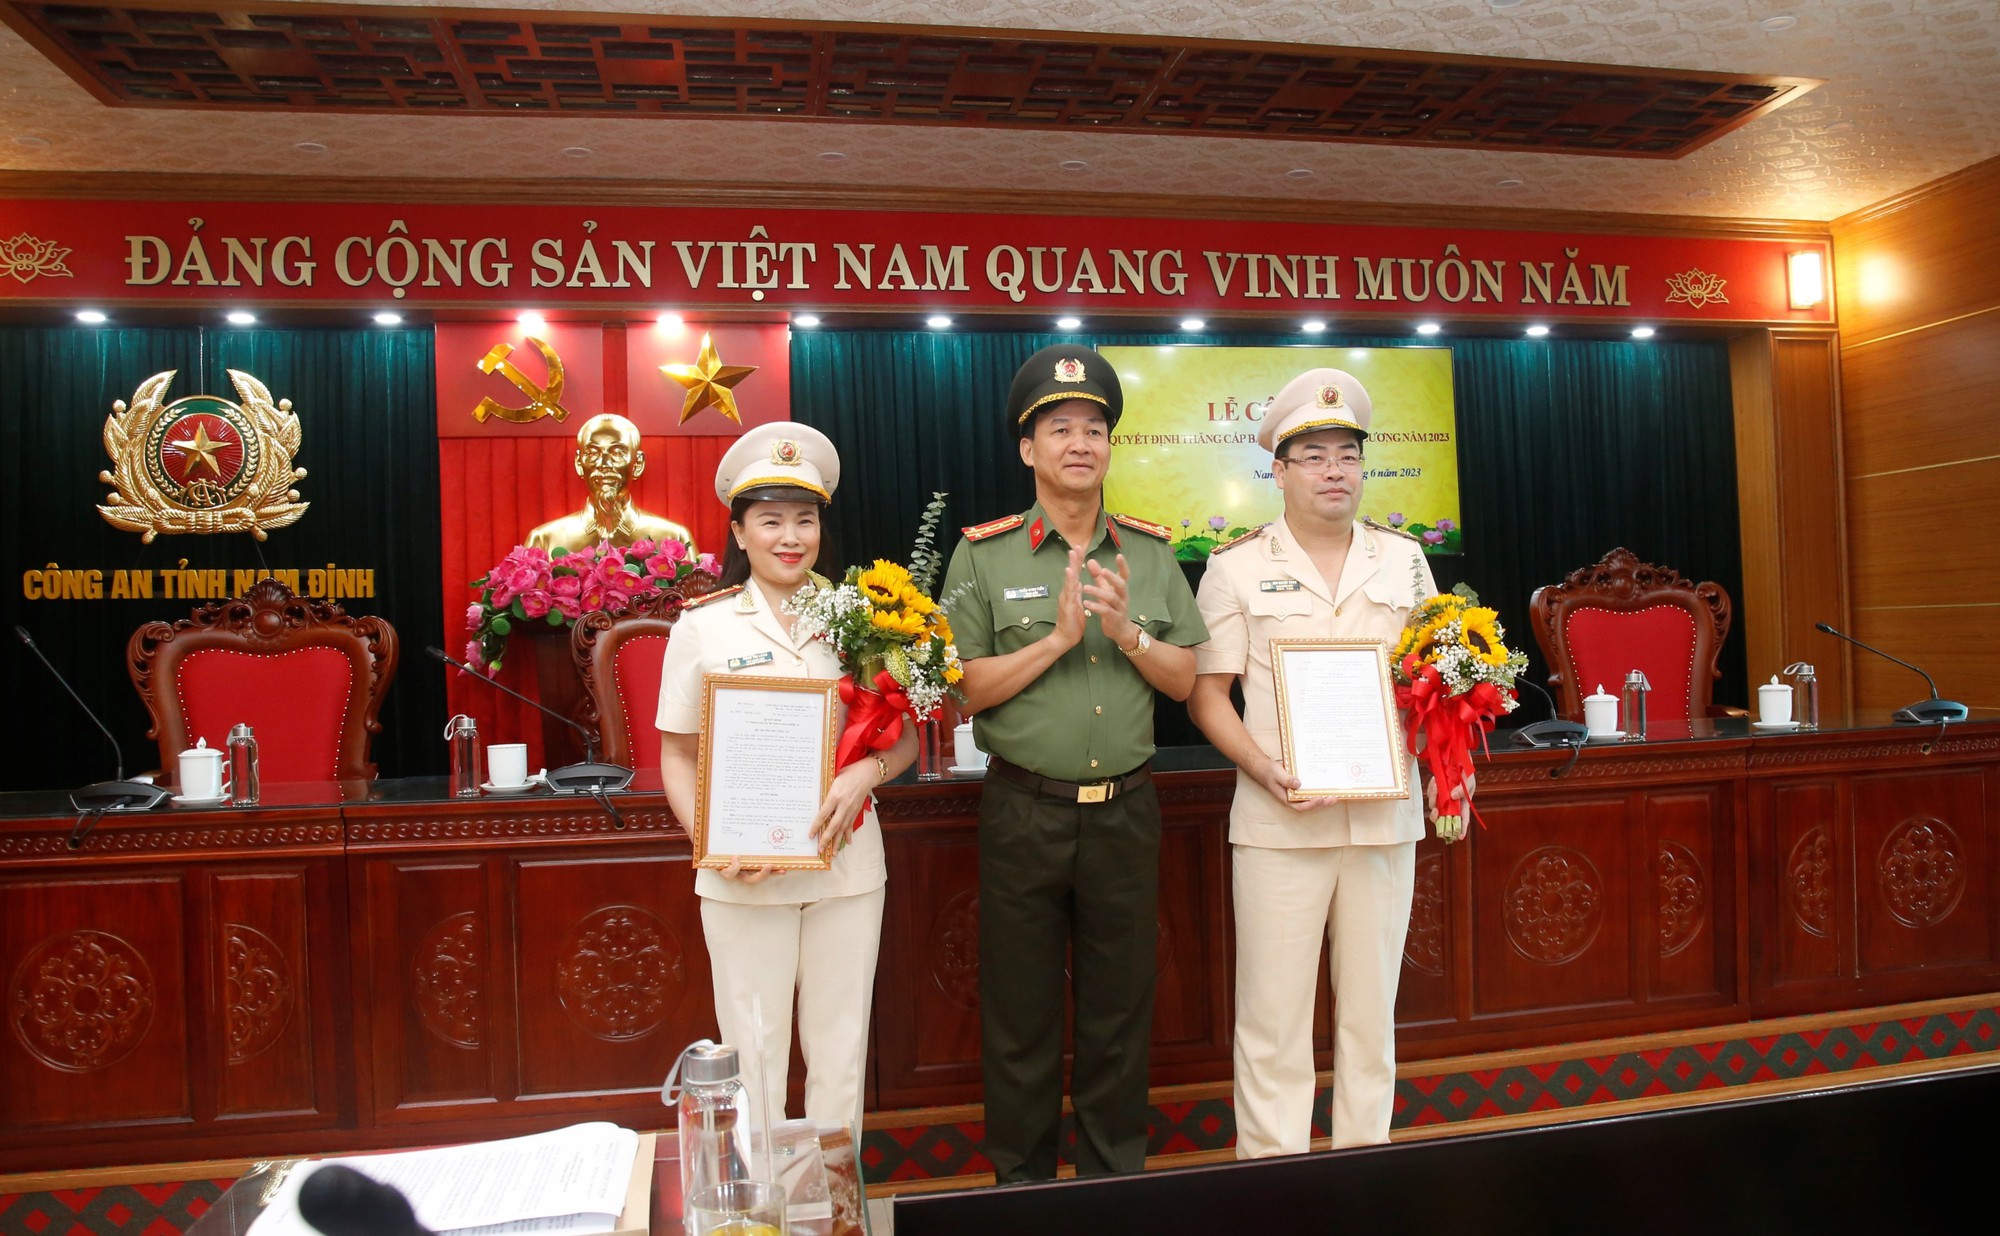 2 Phó Giám đốc Công an Nam Định được nâng lương - Ảnh 1.